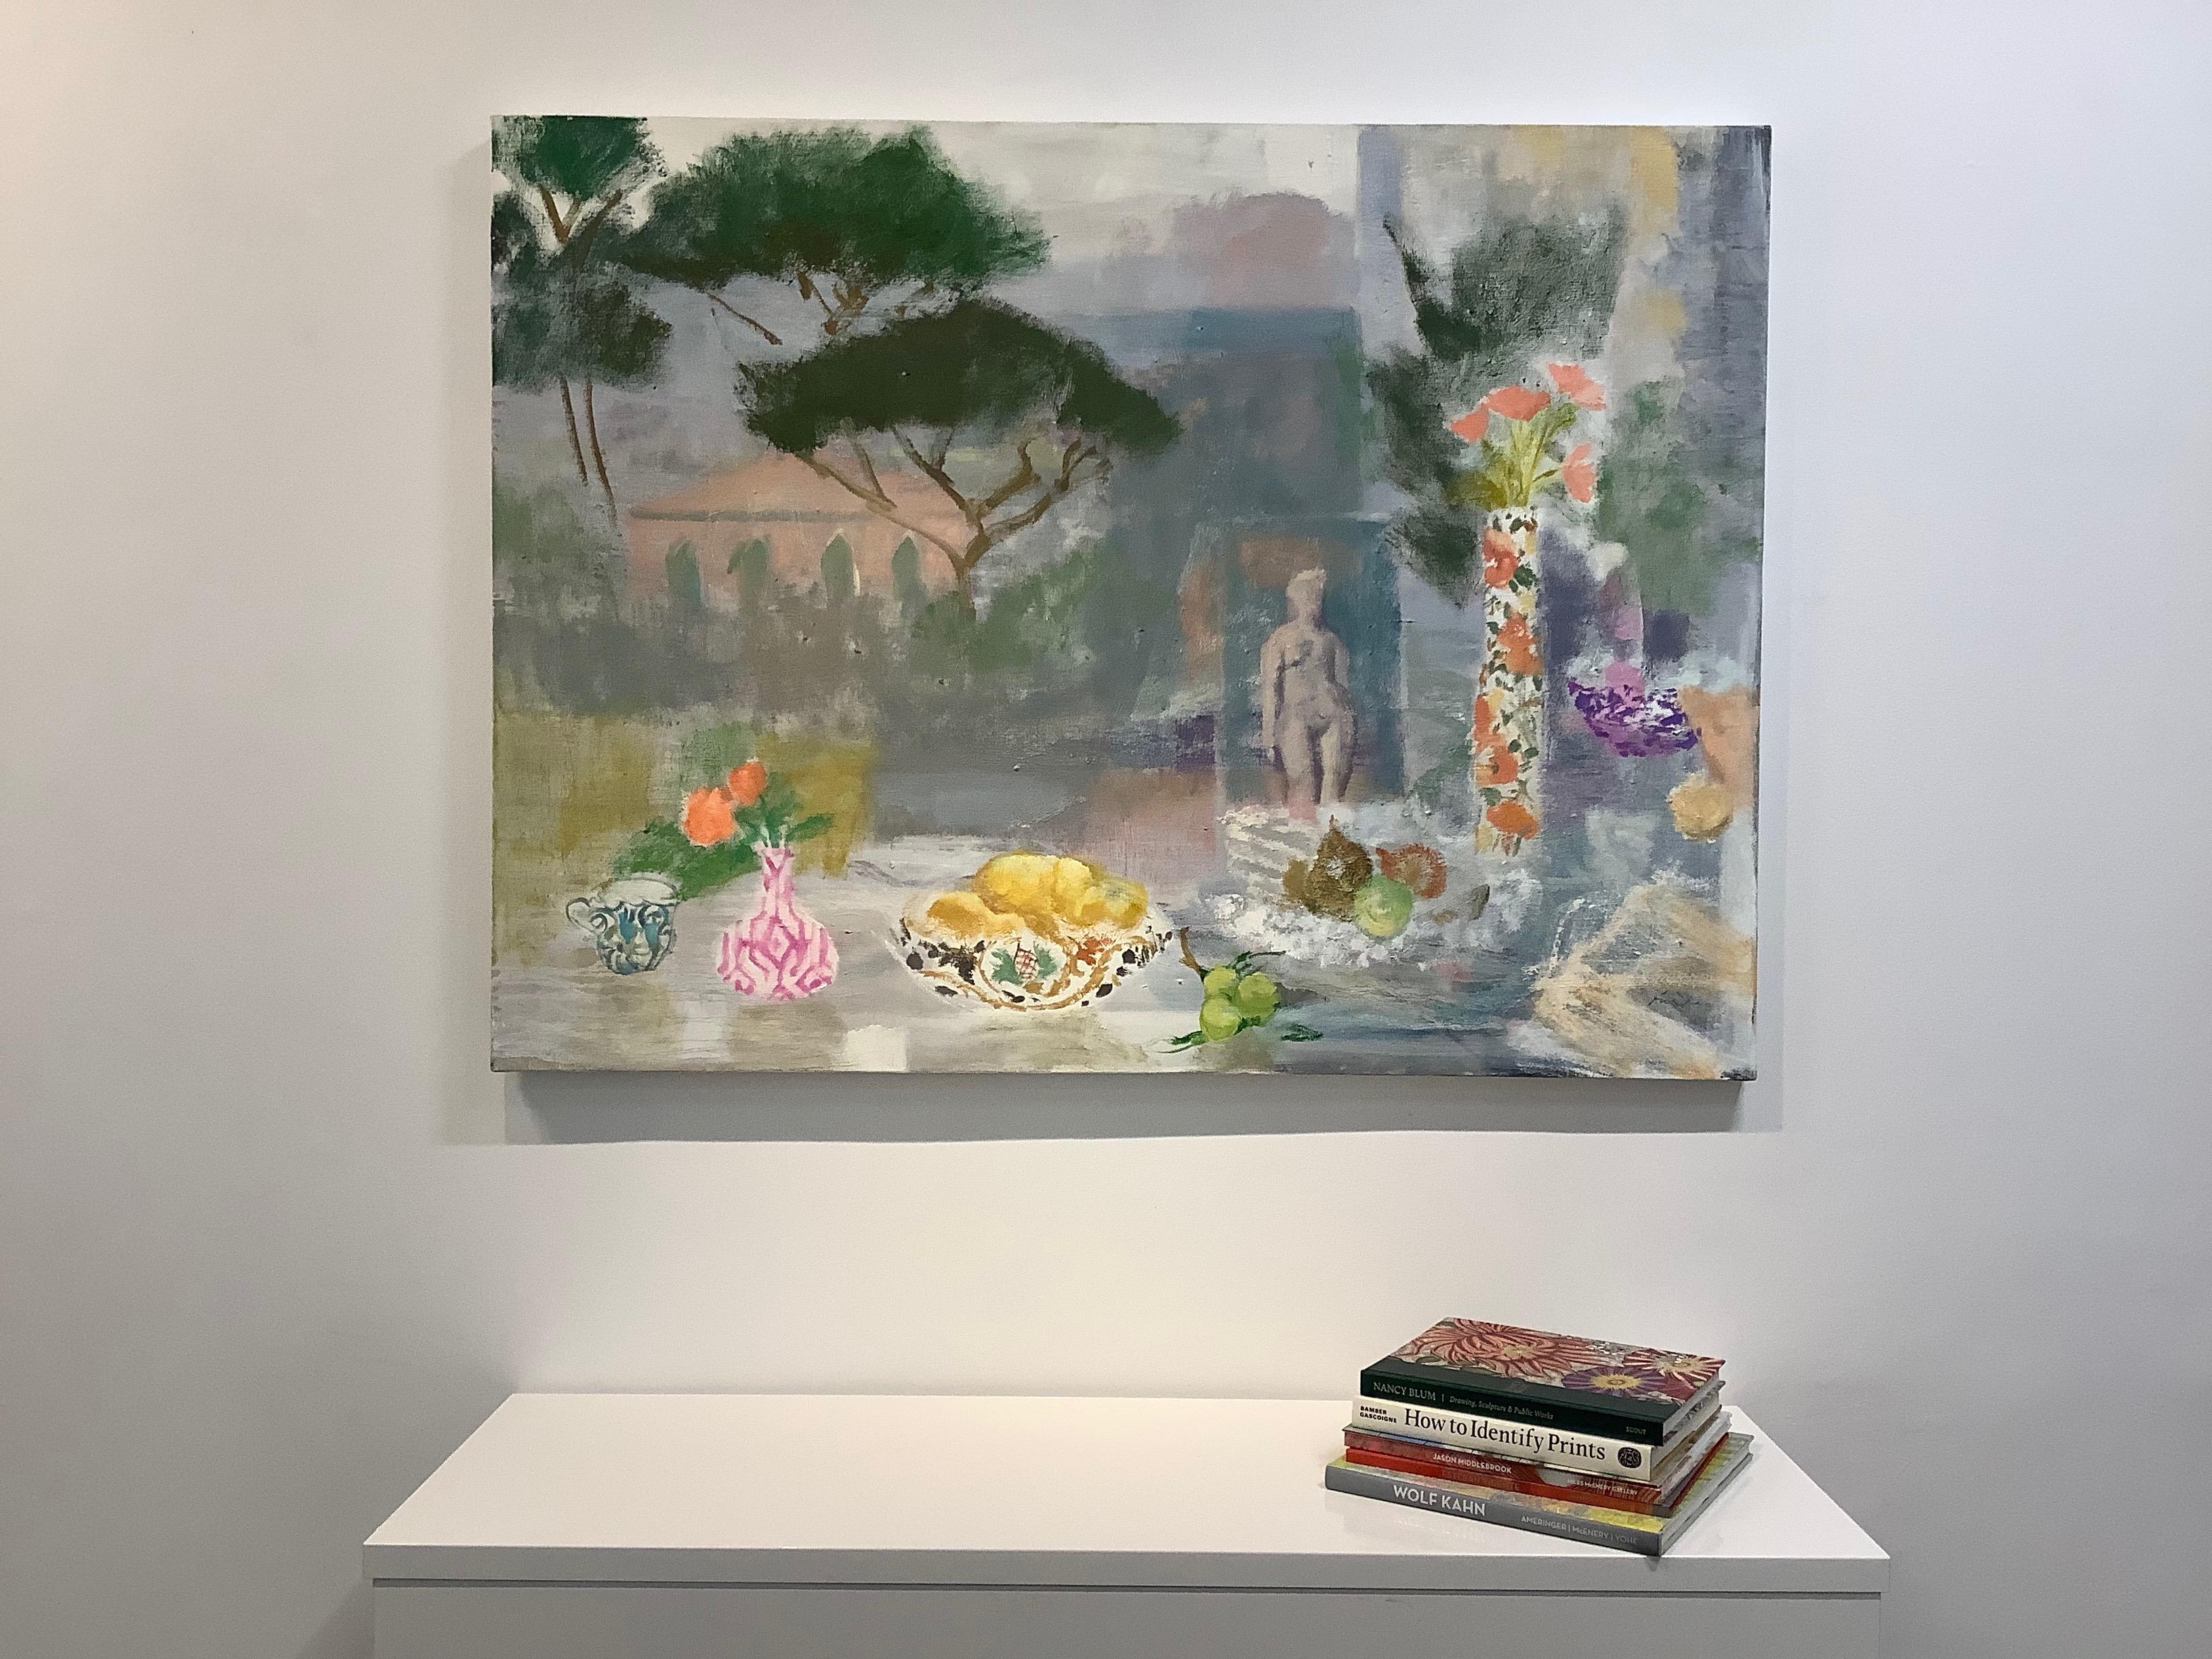 Postkartenplakat von Torcello, Obst, grüne gelbe Birnen, pfirsichfarbene Blumen, Figur, grüne Bäume – Painting von Melanie Parke